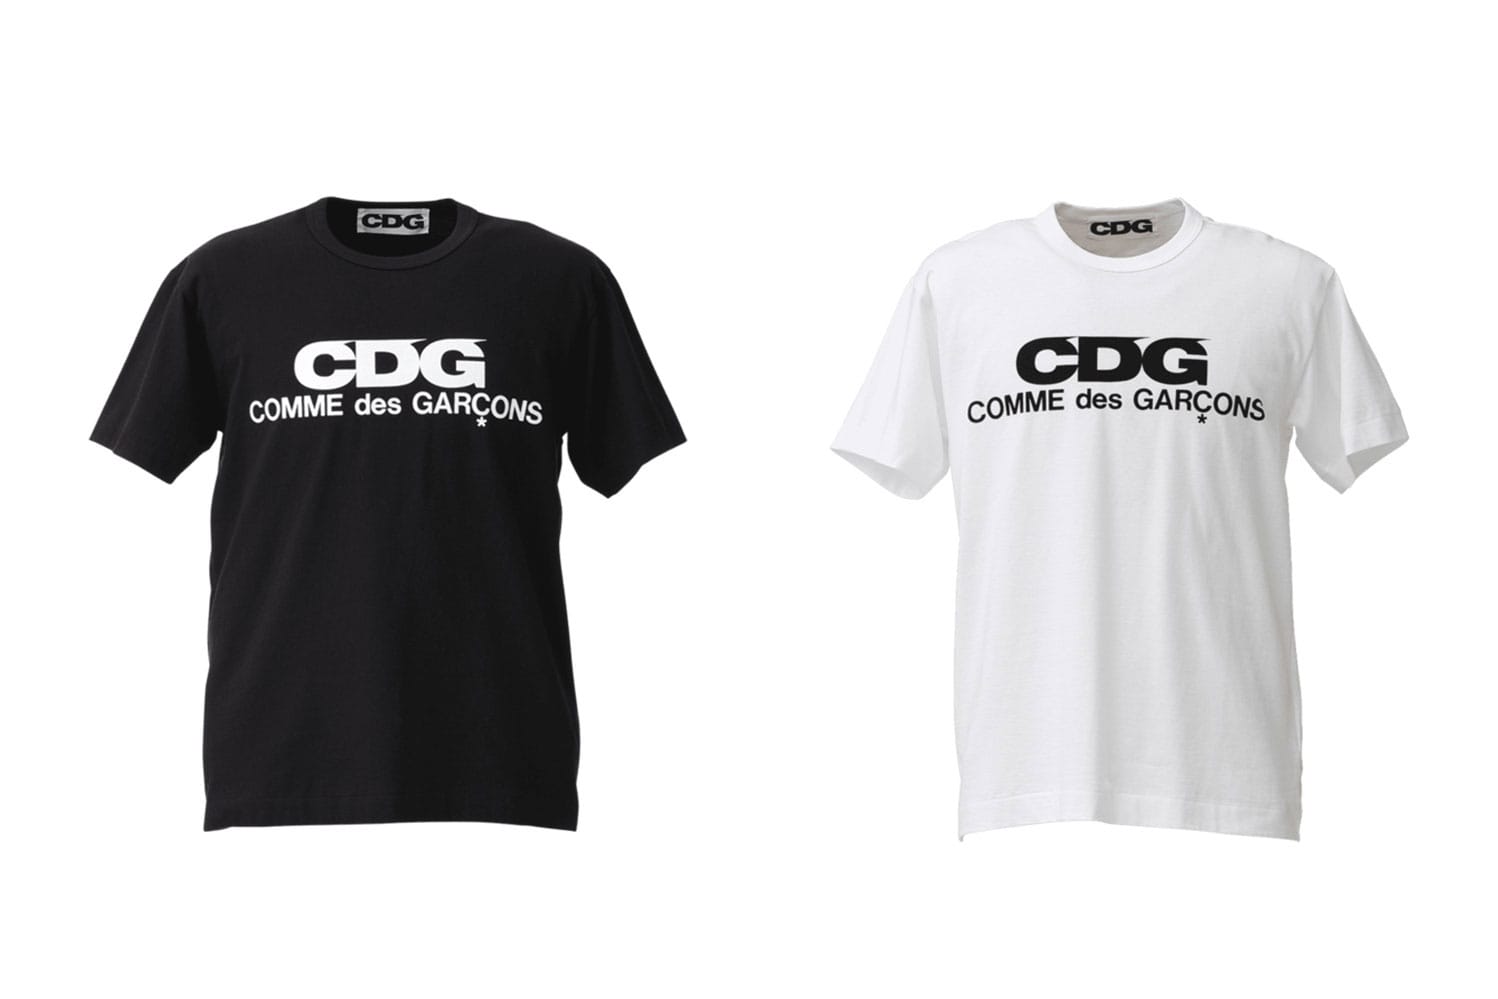 COMME des GARÇONS Announces New CDG 